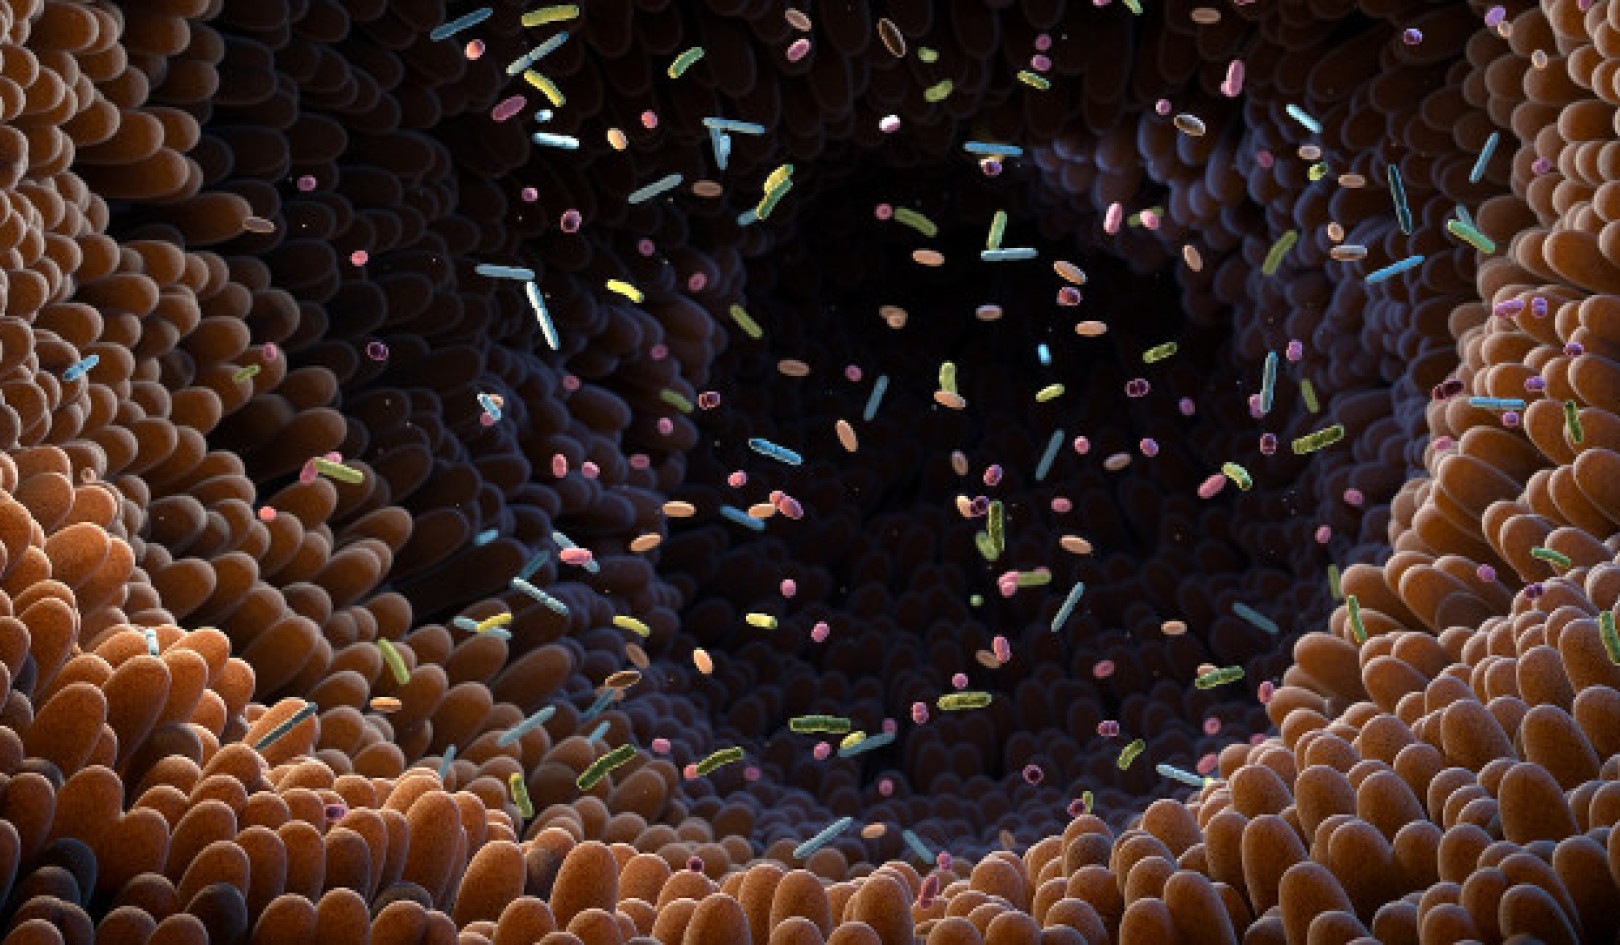 Ontsluiting van die potensiaal van dermmikrobioom: implikasies vir gesondheid en behandeling